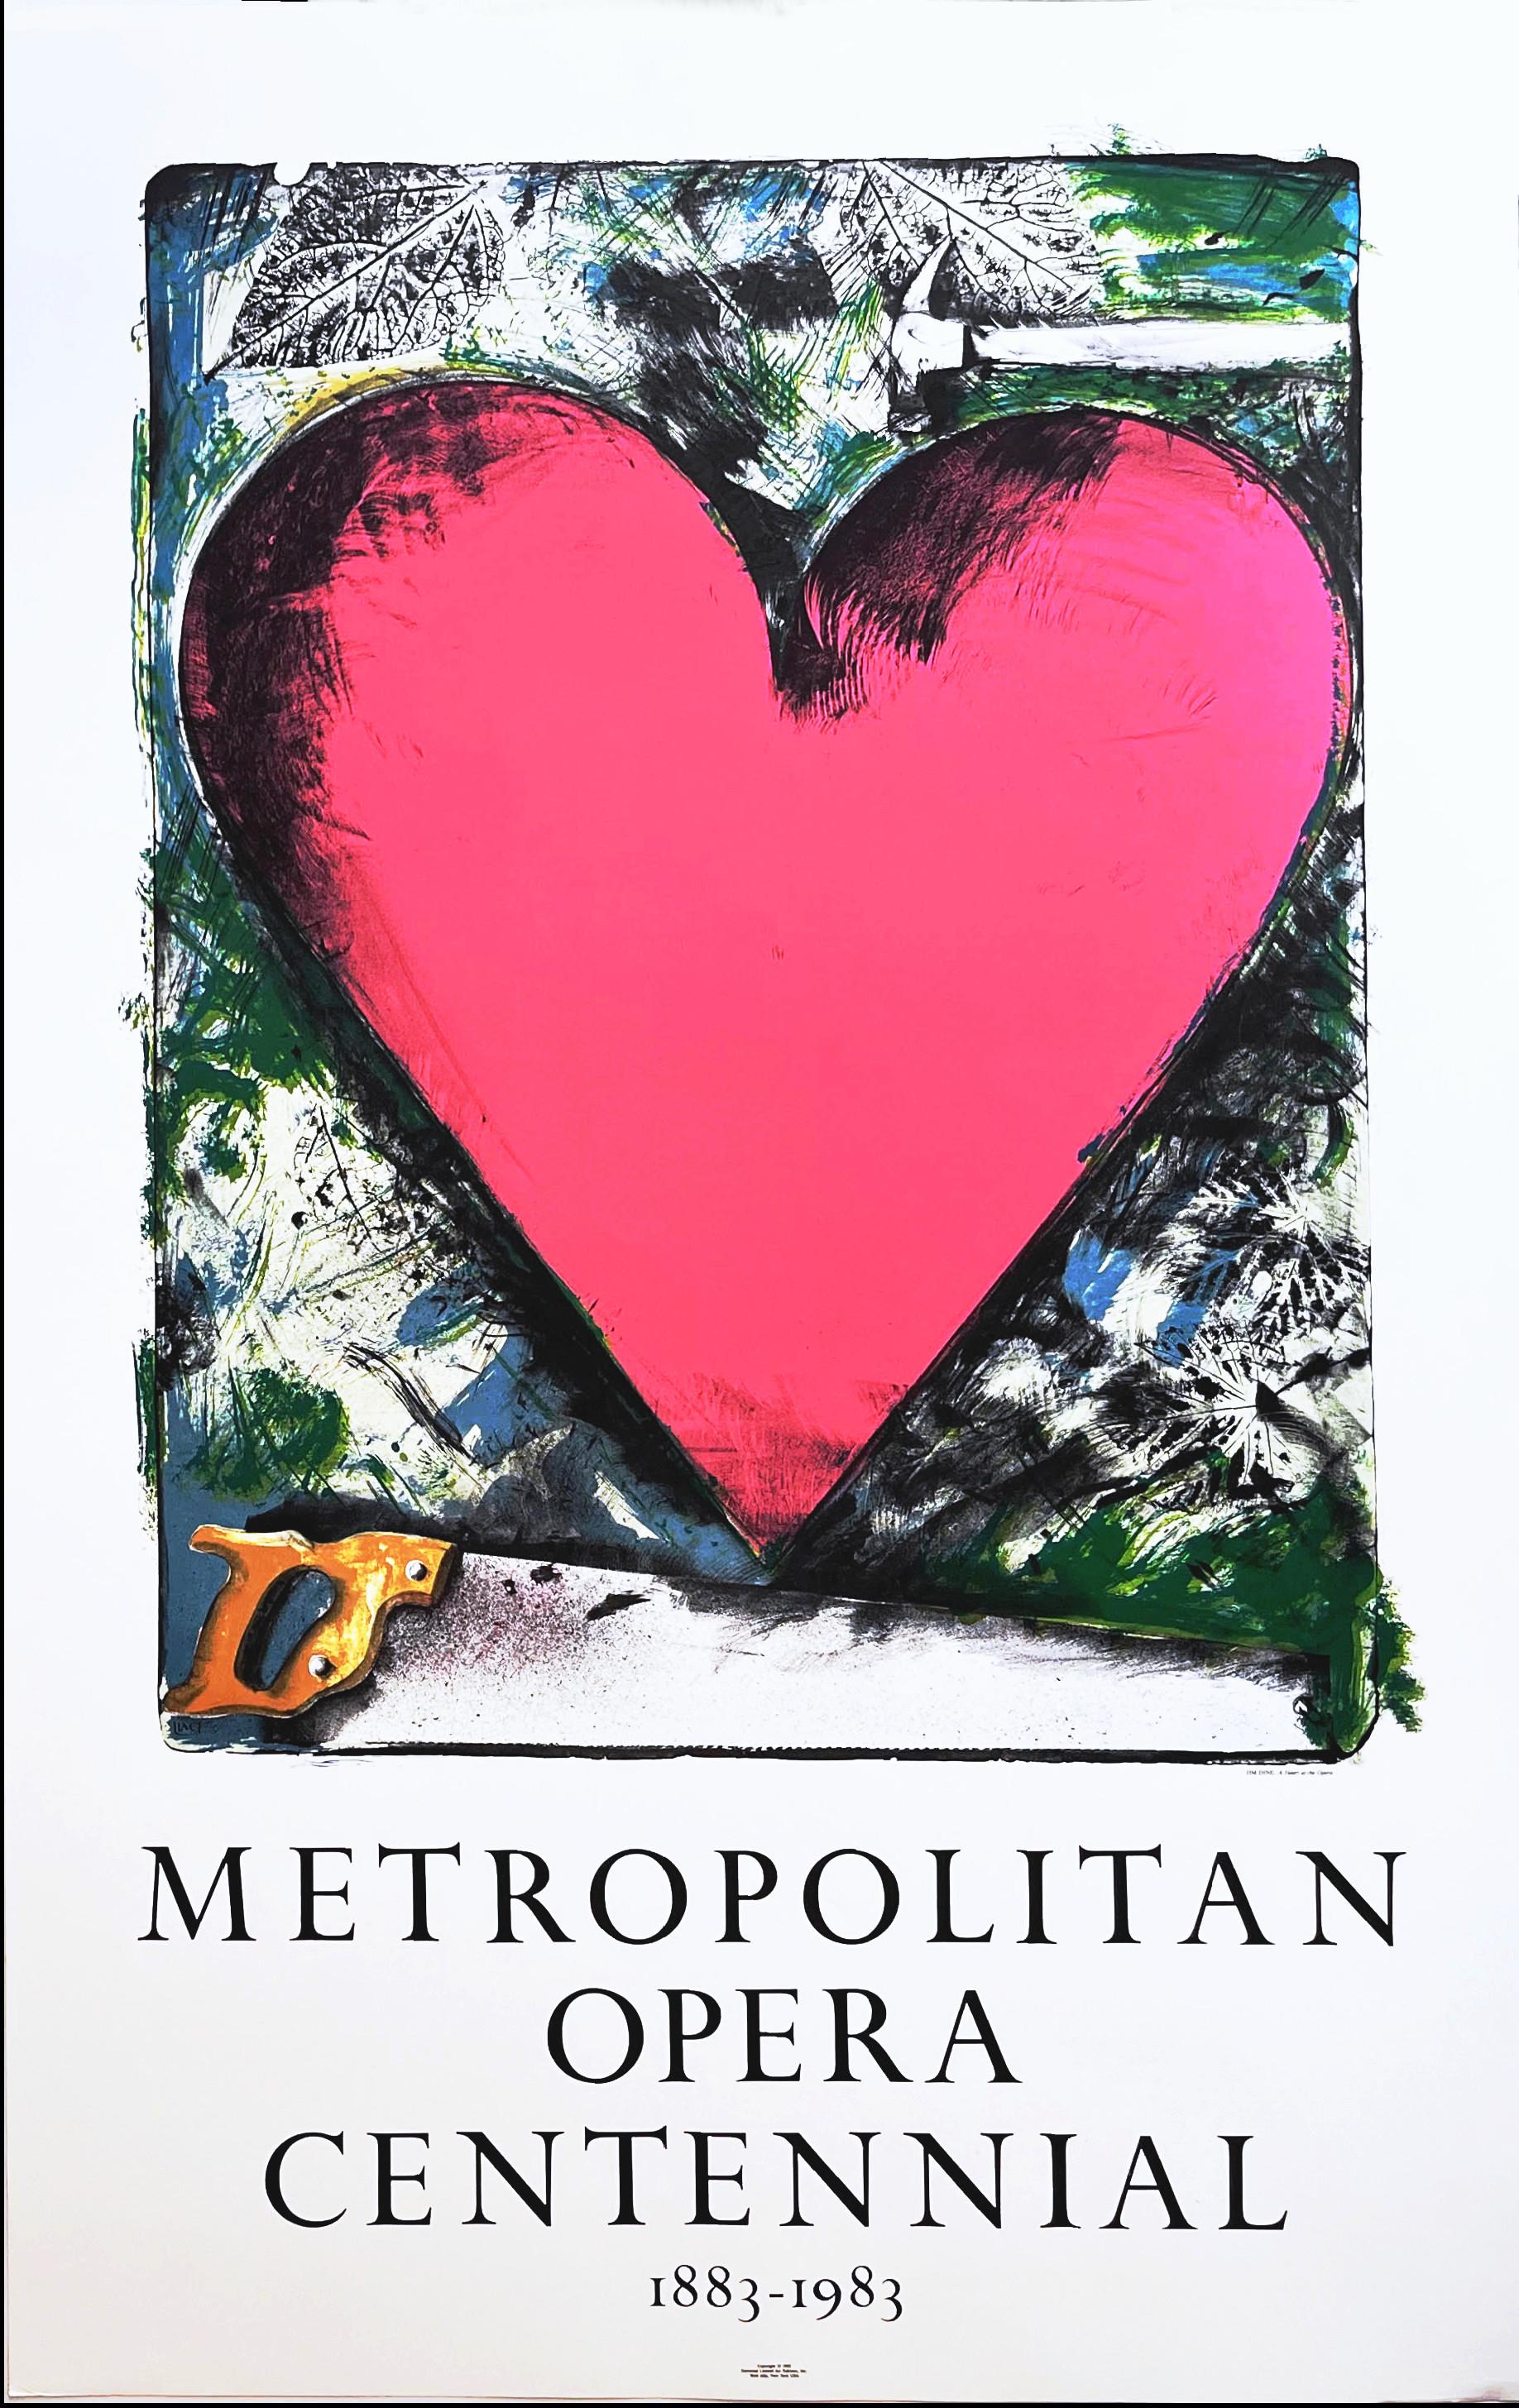 Corazón Rosa: Centenario de la Ópera Metropolitana 1883-1983 cartel litográfico Pop Art